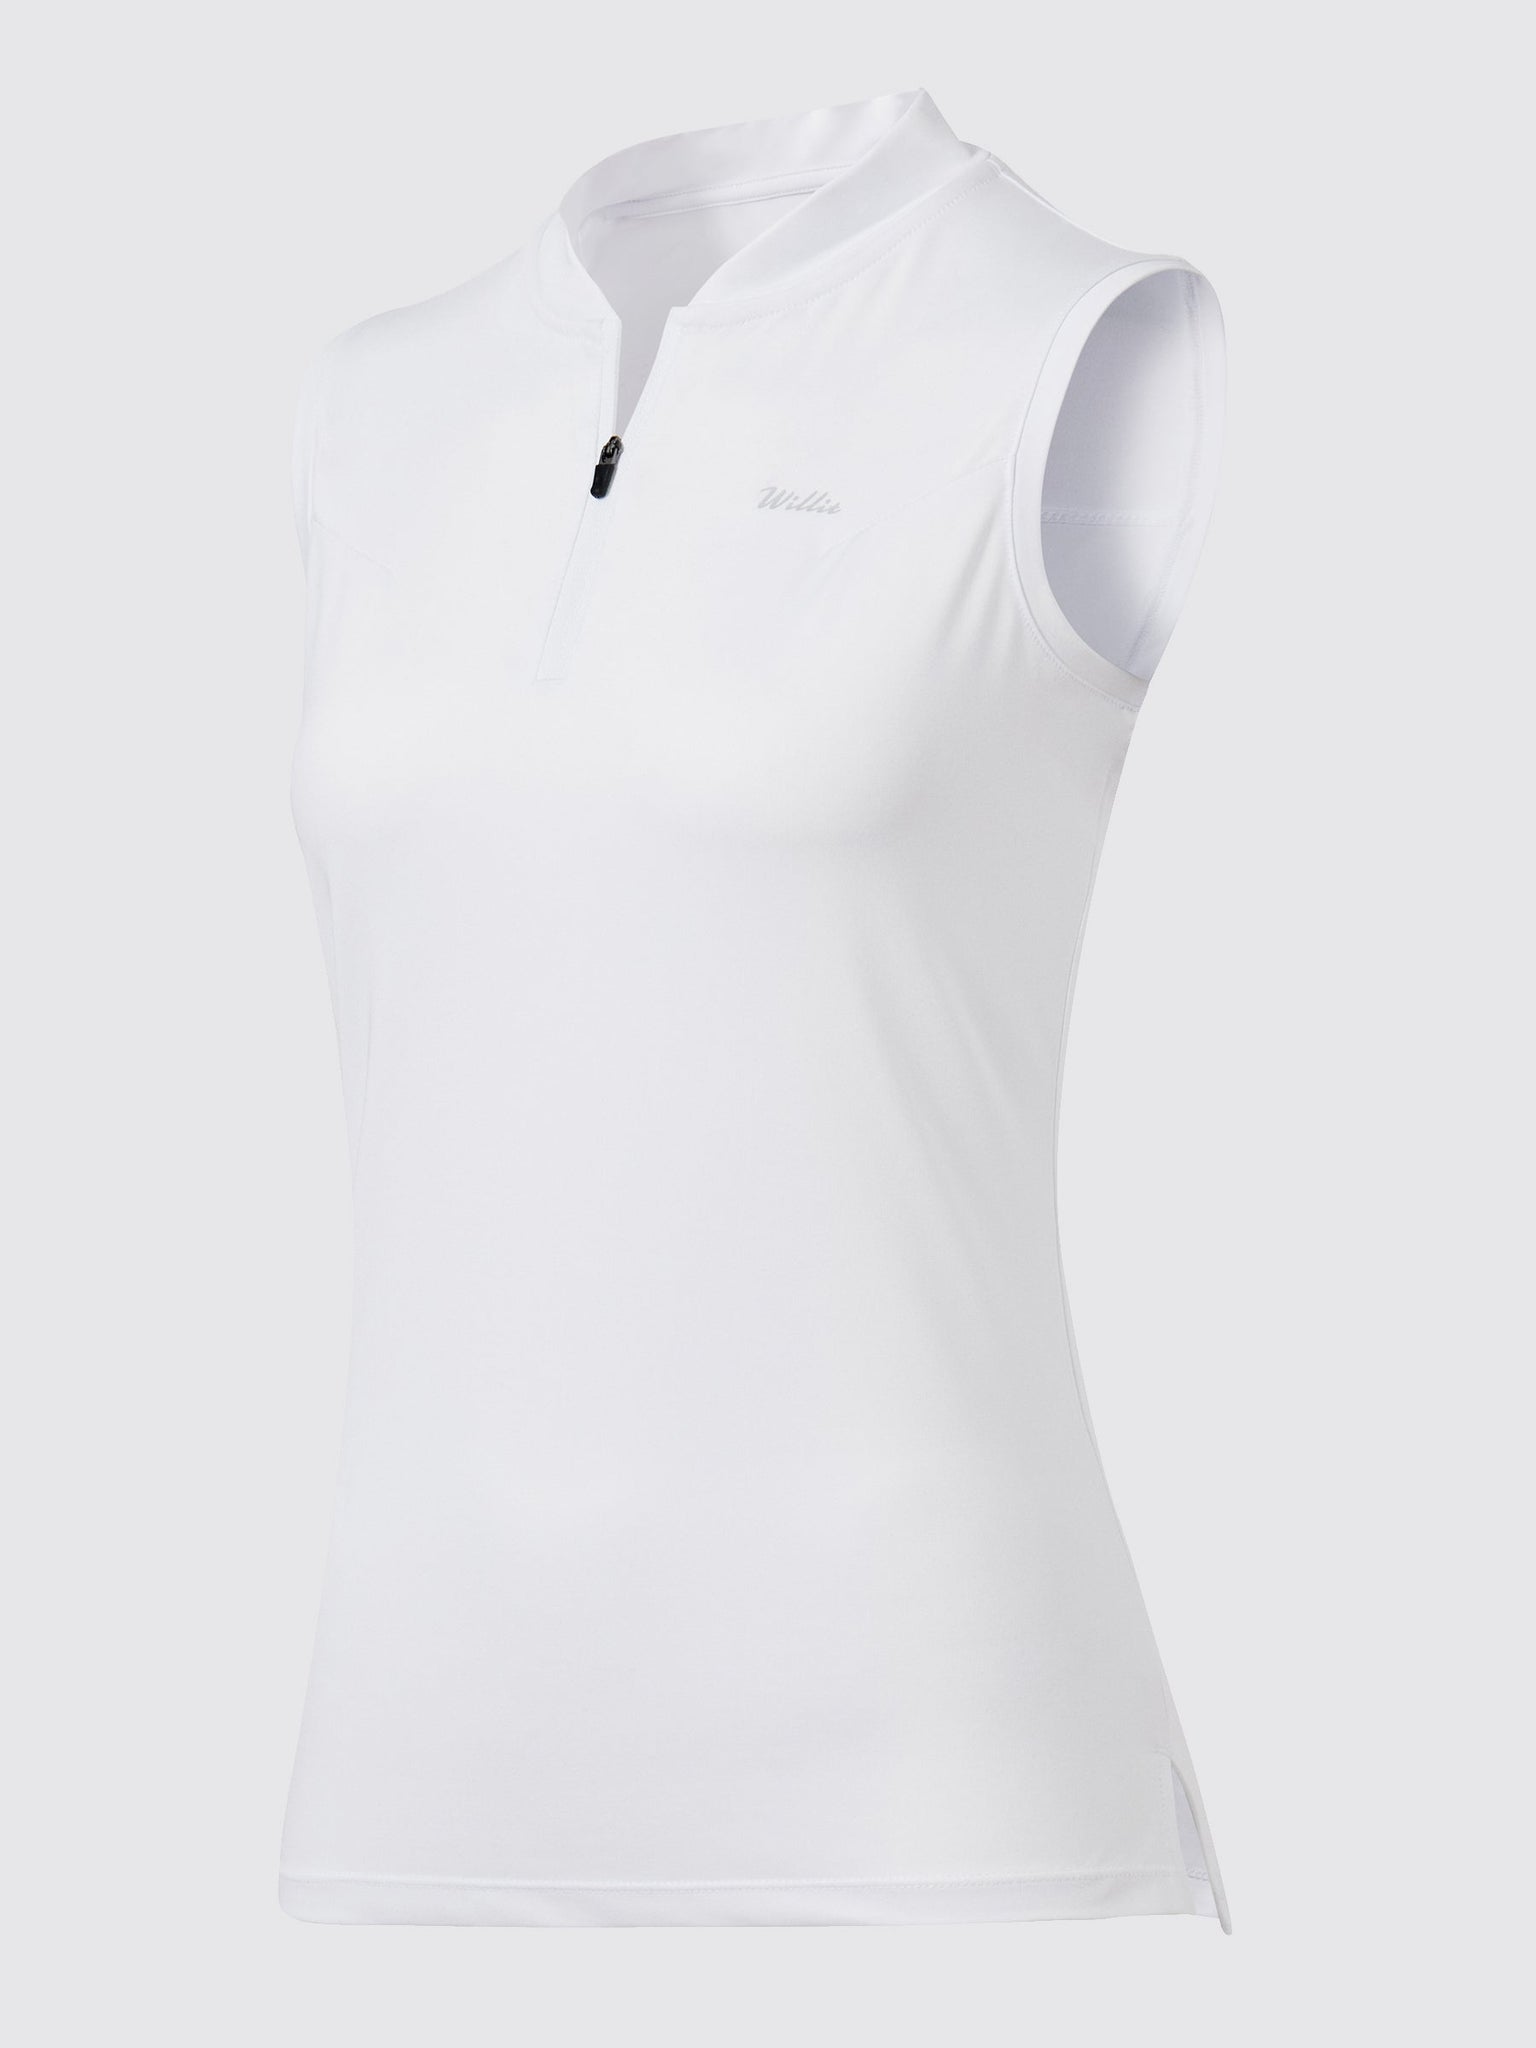 Willit Women's Sleeveless Golf Polo Shirts_White